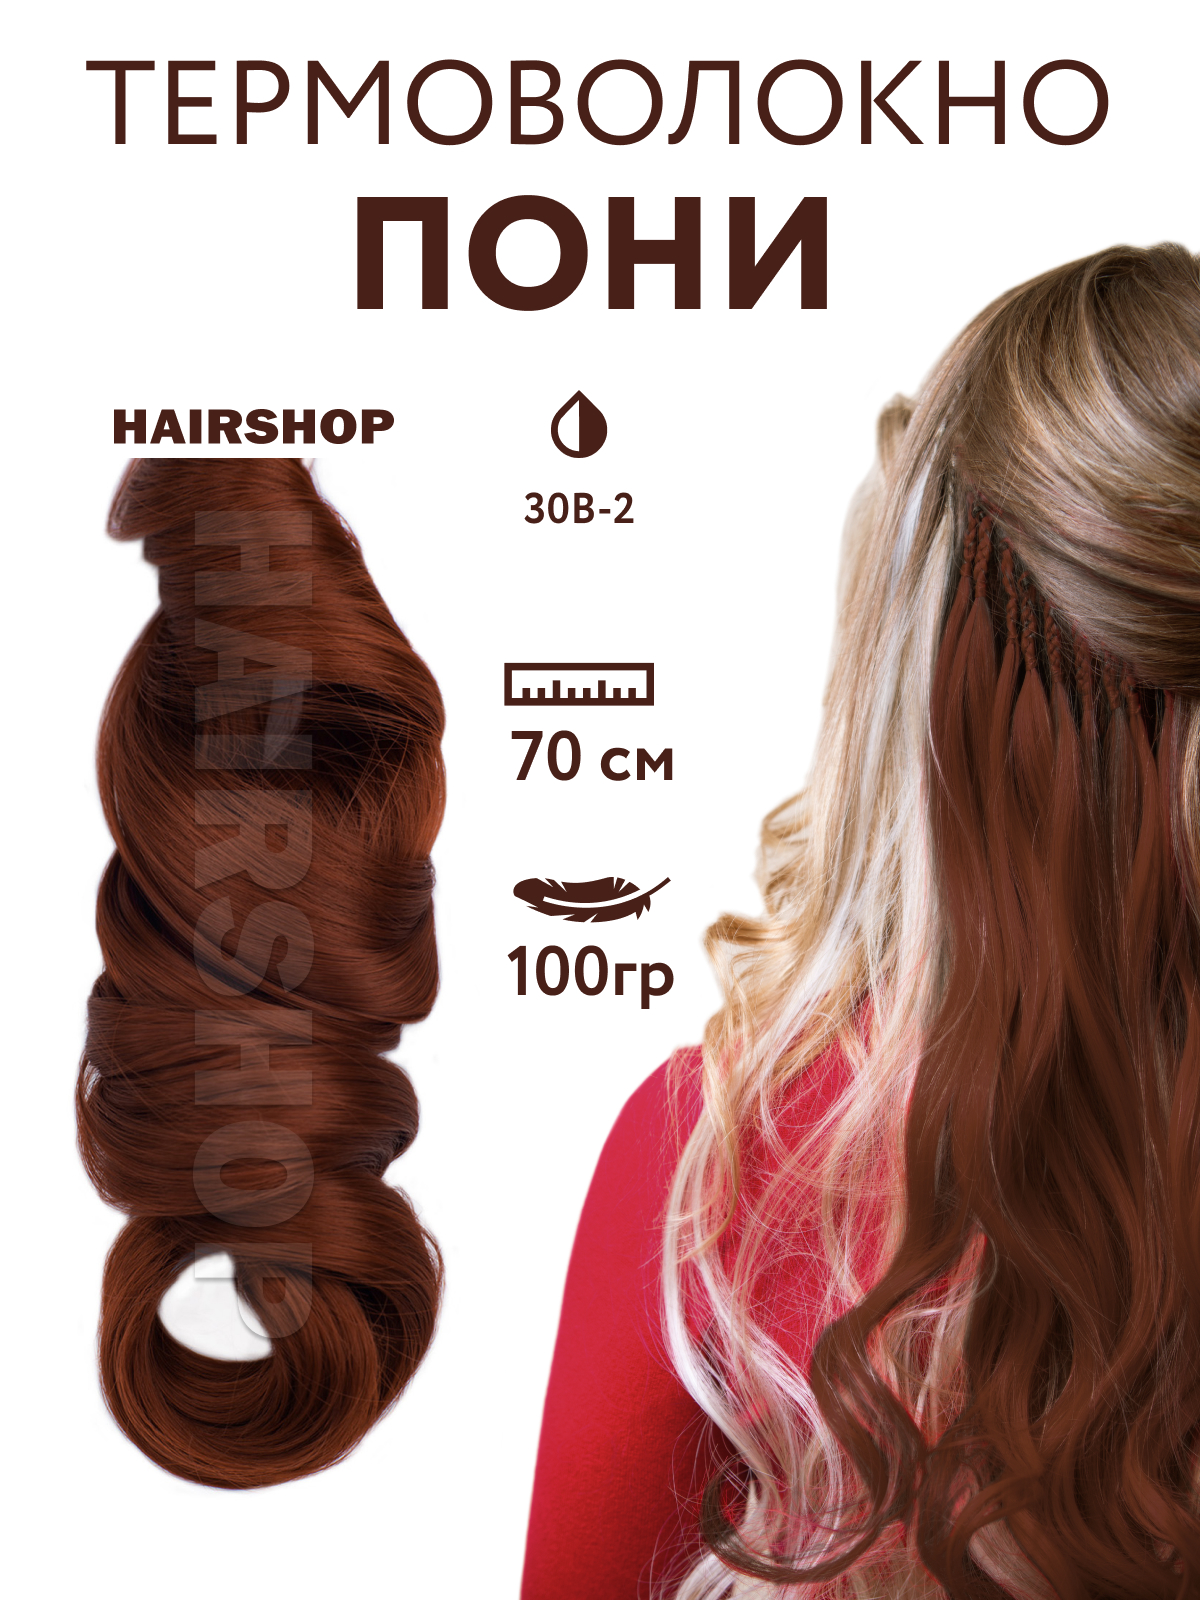 Канекалон HAIRSHOP Пони HairUp для точечного афронаращивания 30B-2 Натурально рыжий 1,4м канекалон hairshop пони hairup для точечного афронаращивания прямые 118 1 бордо 1 4м 100г